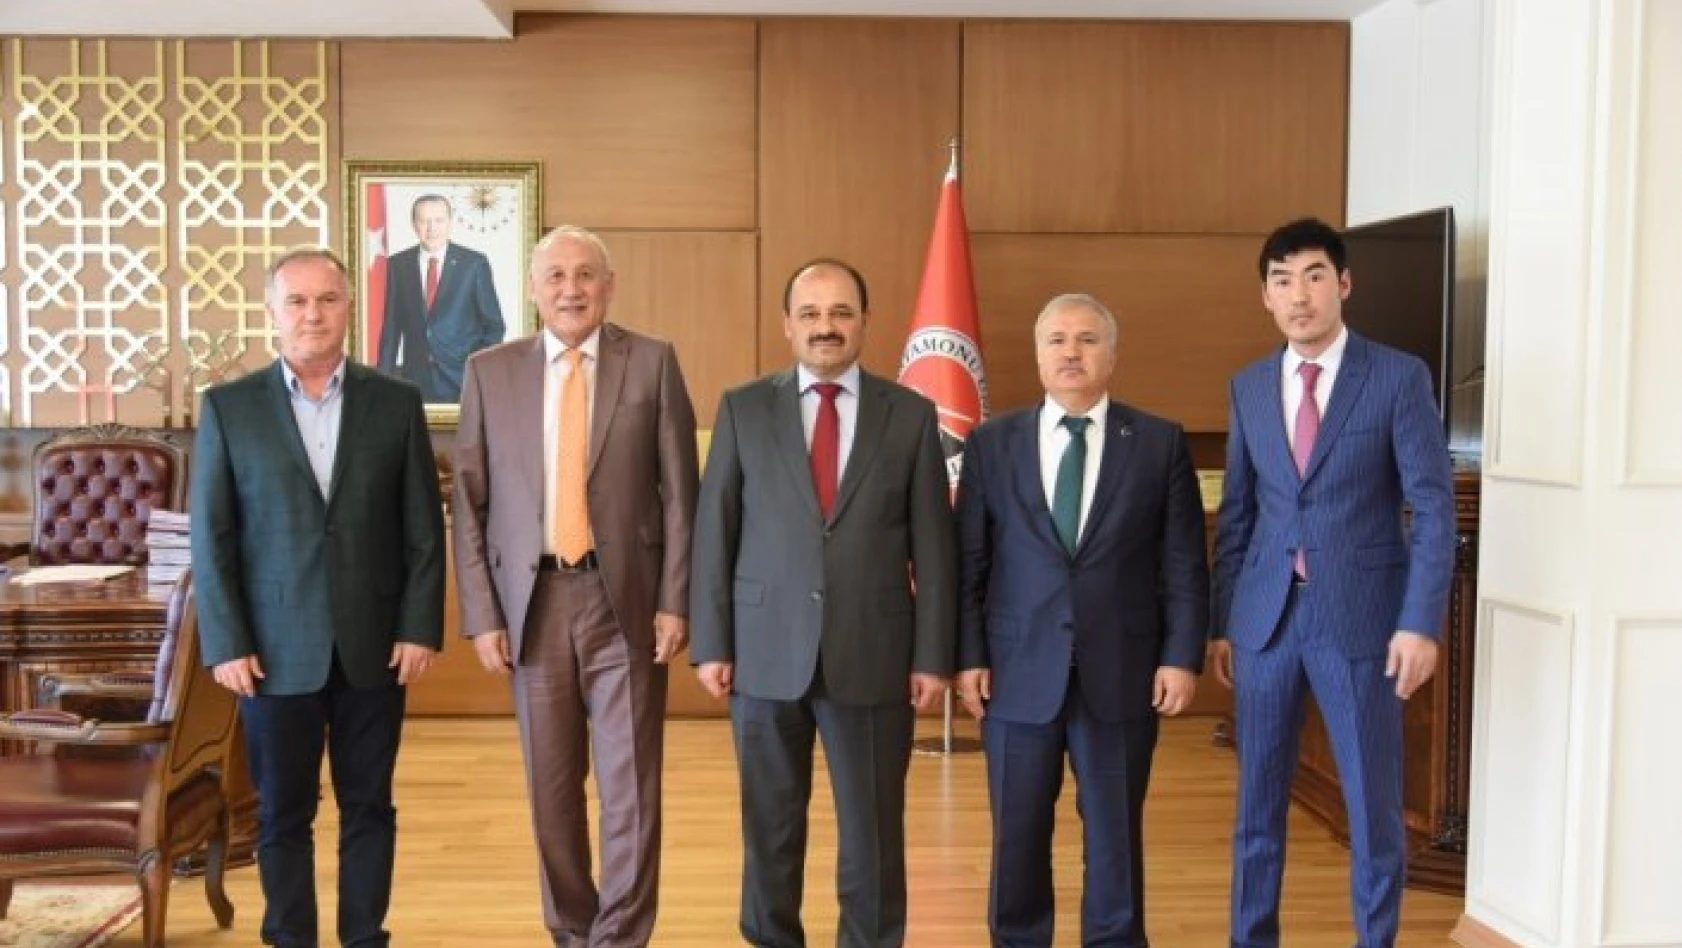 Kastamonu Üniversitesi ile Kazakistan Bolaşak Akademisi arasında iş birliği